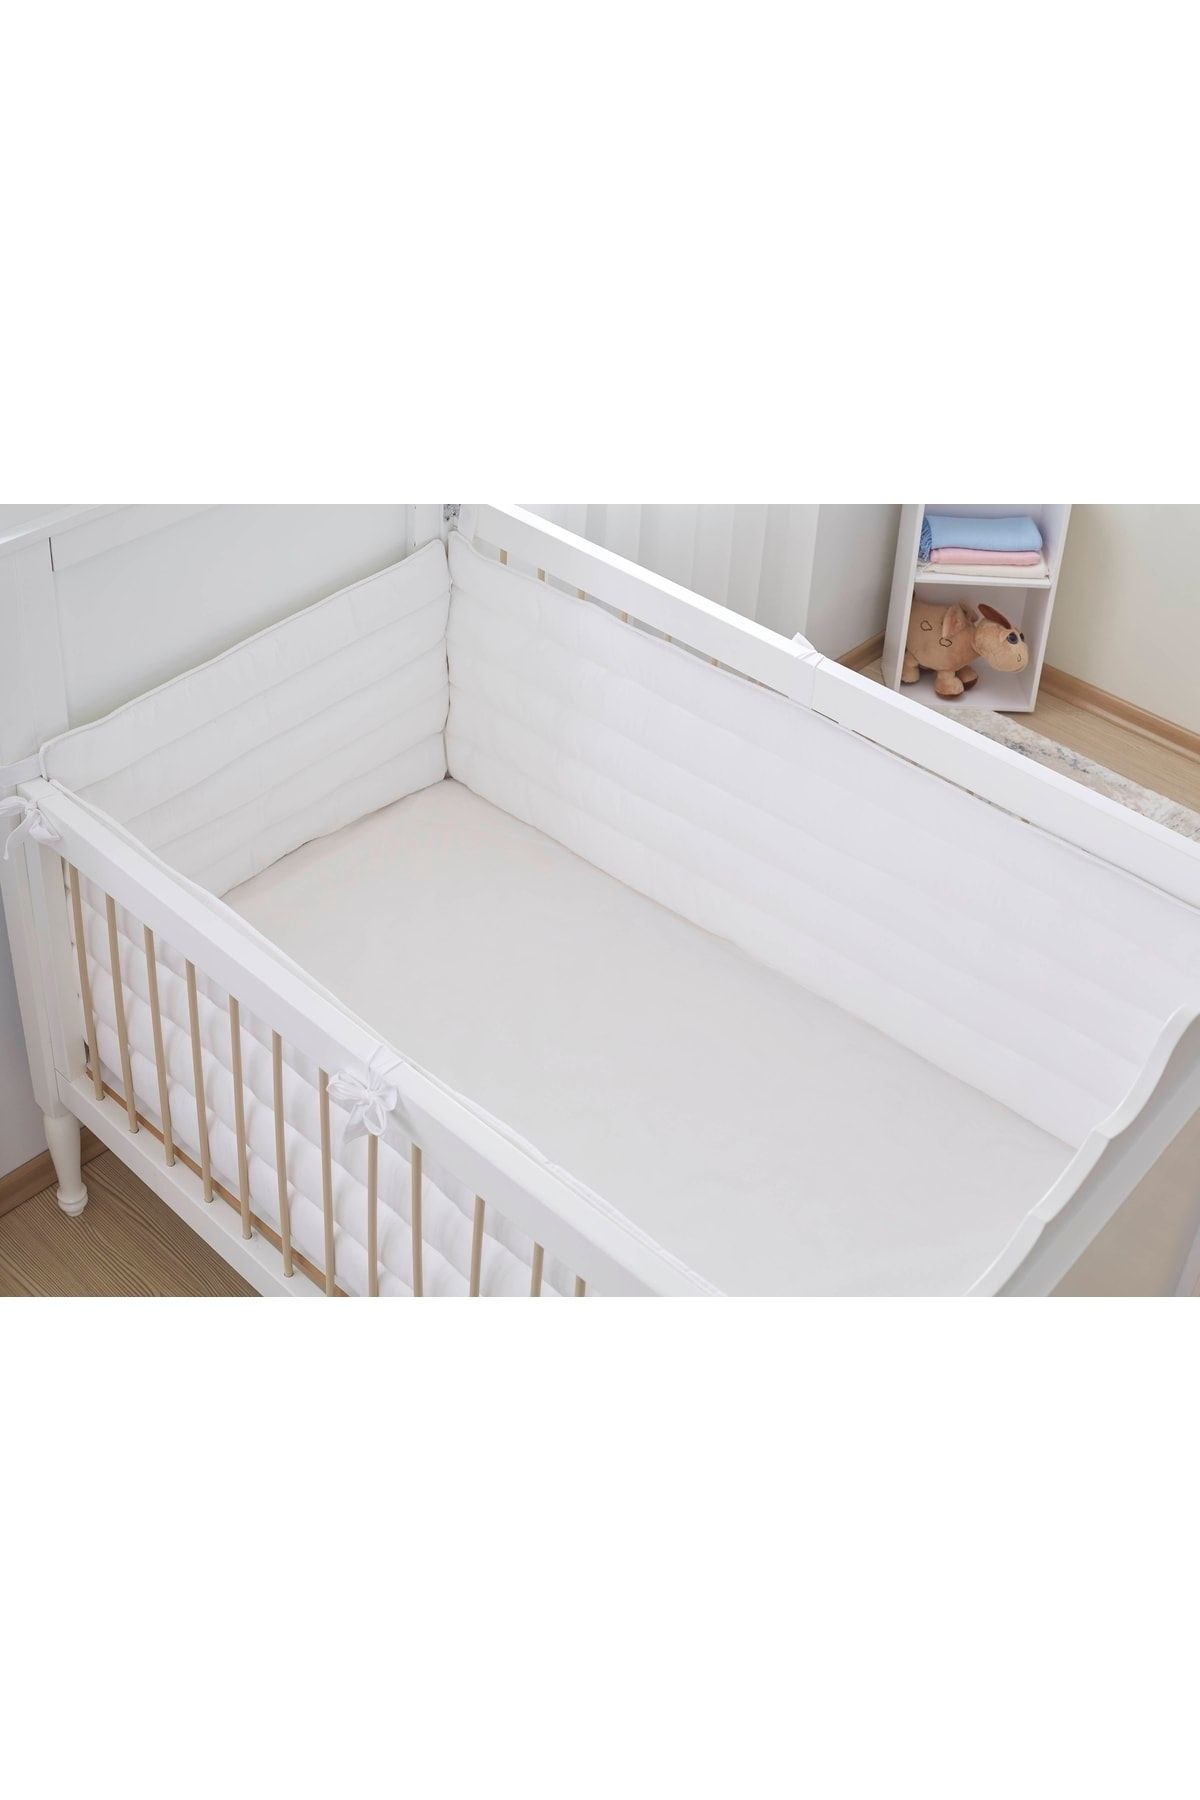 Aybi Baby Beşik Kenar Koruyucu Set 4 Parça- Beyaz - 70x130 Cm